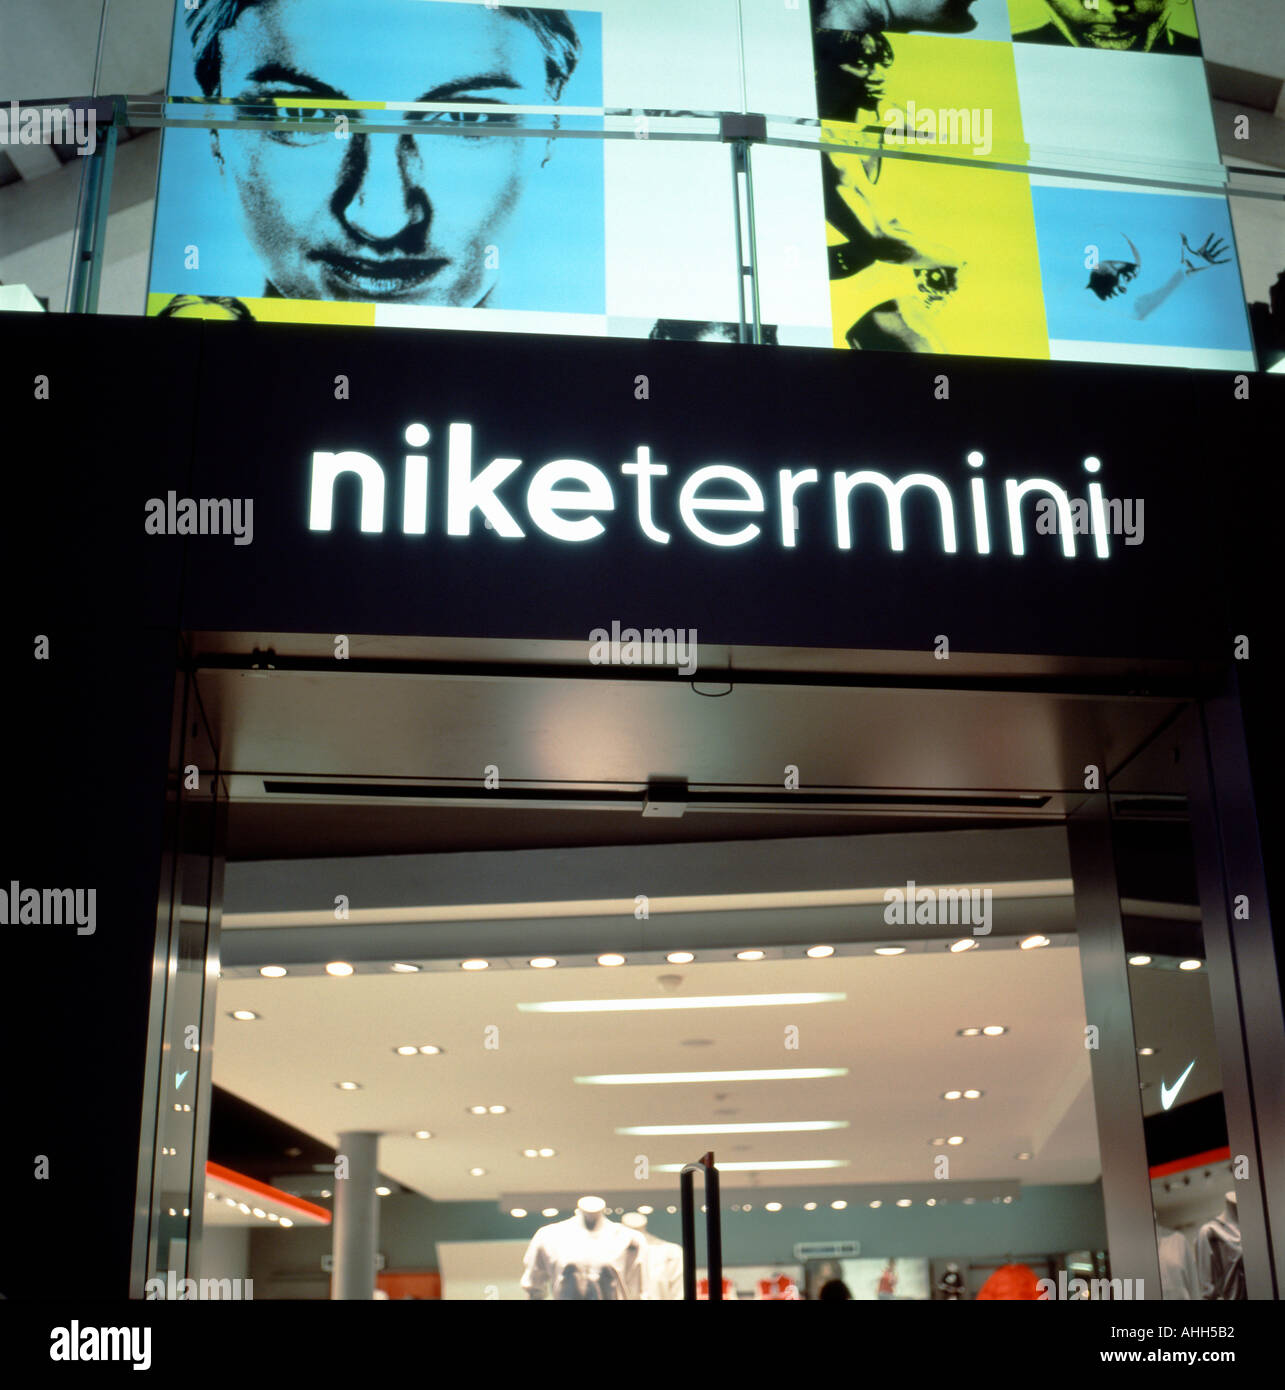 Nike termini train station rome fotografías e imágenes de alta resolución -  Alamy